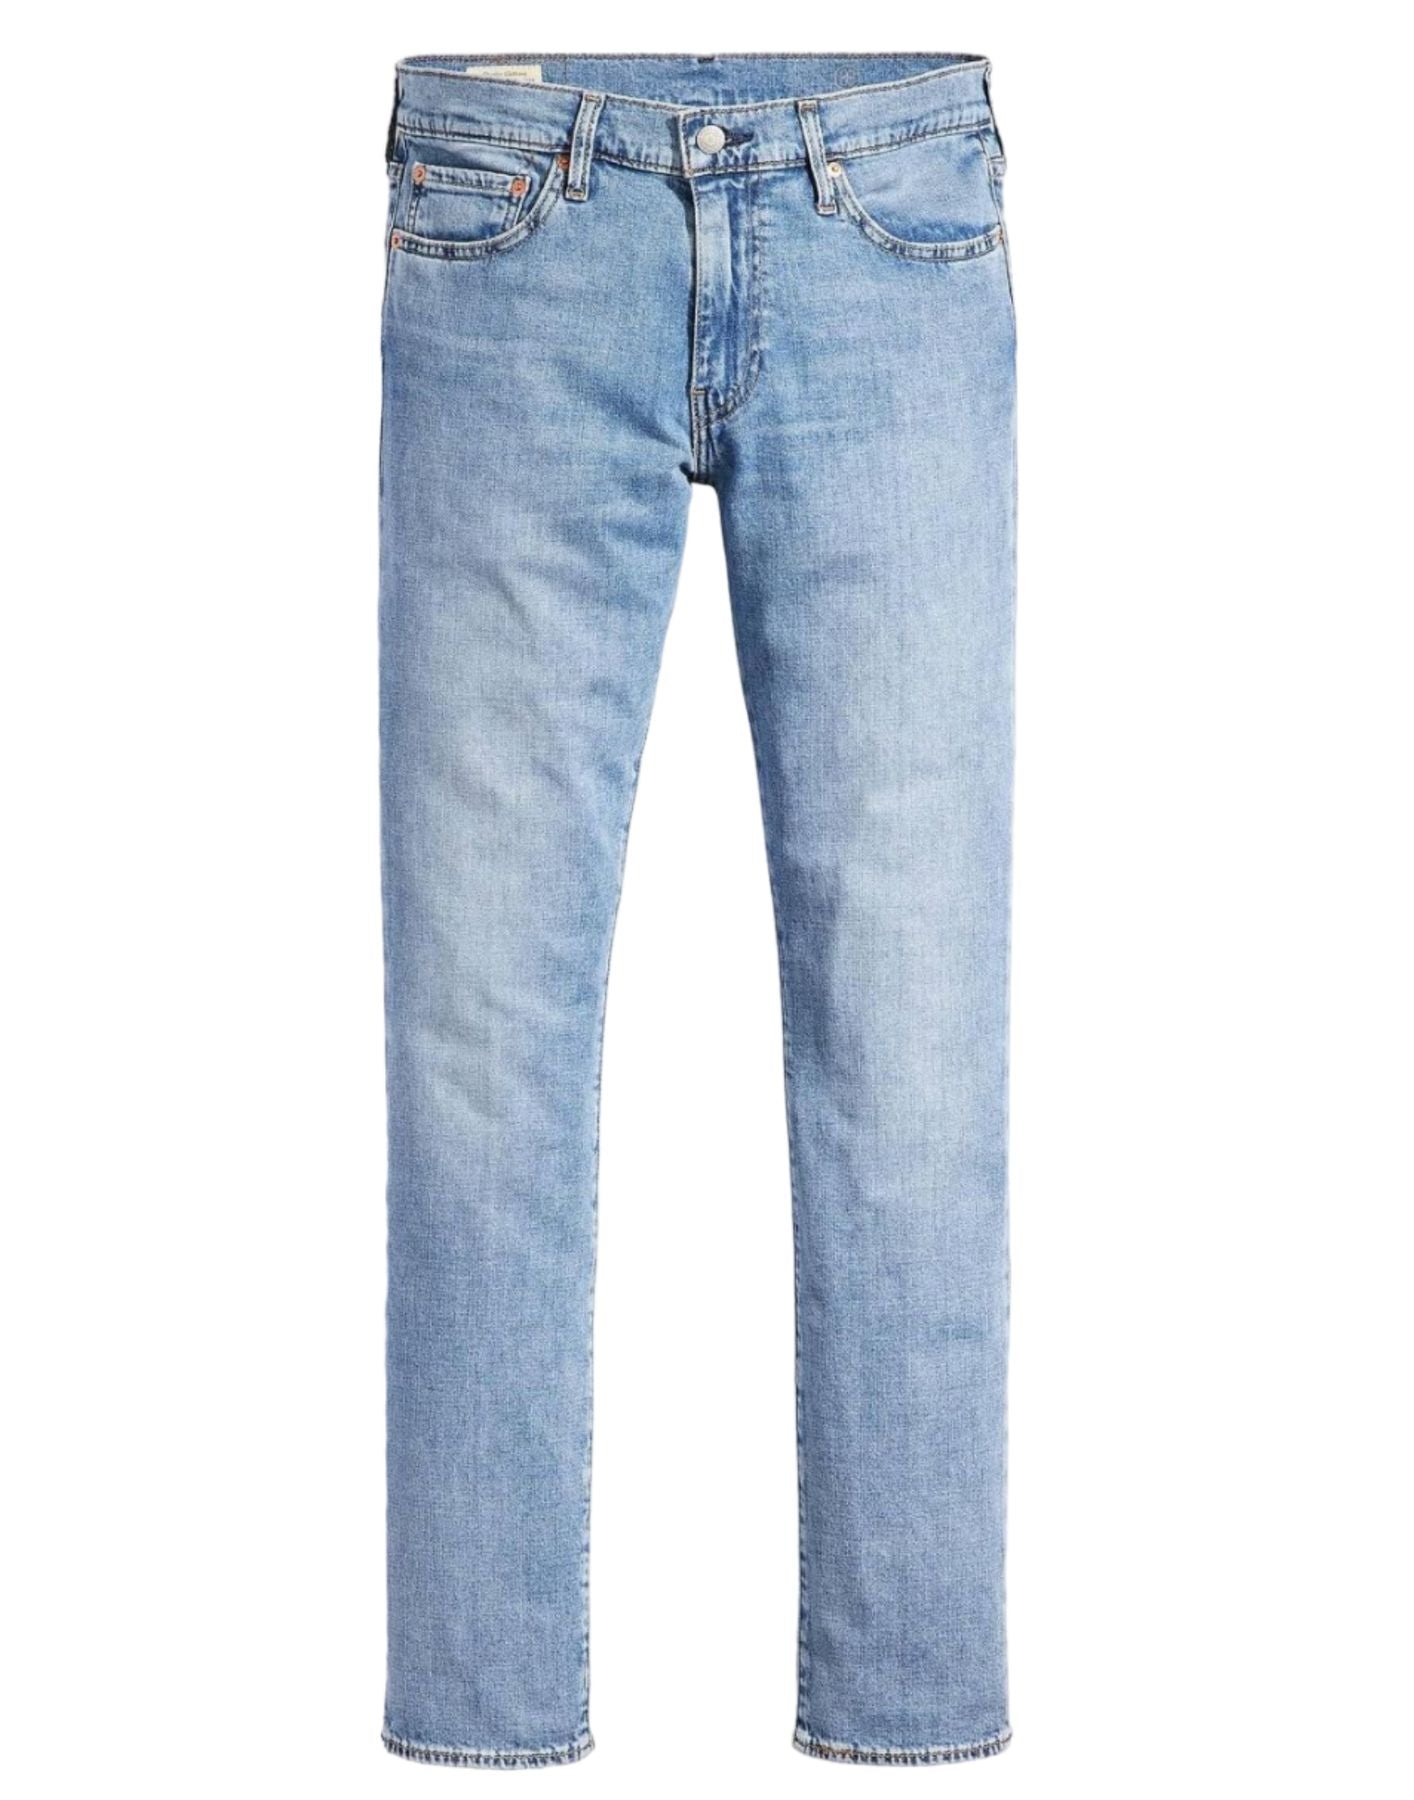 Jeans pour homme 04511 5933 bleu Levi's